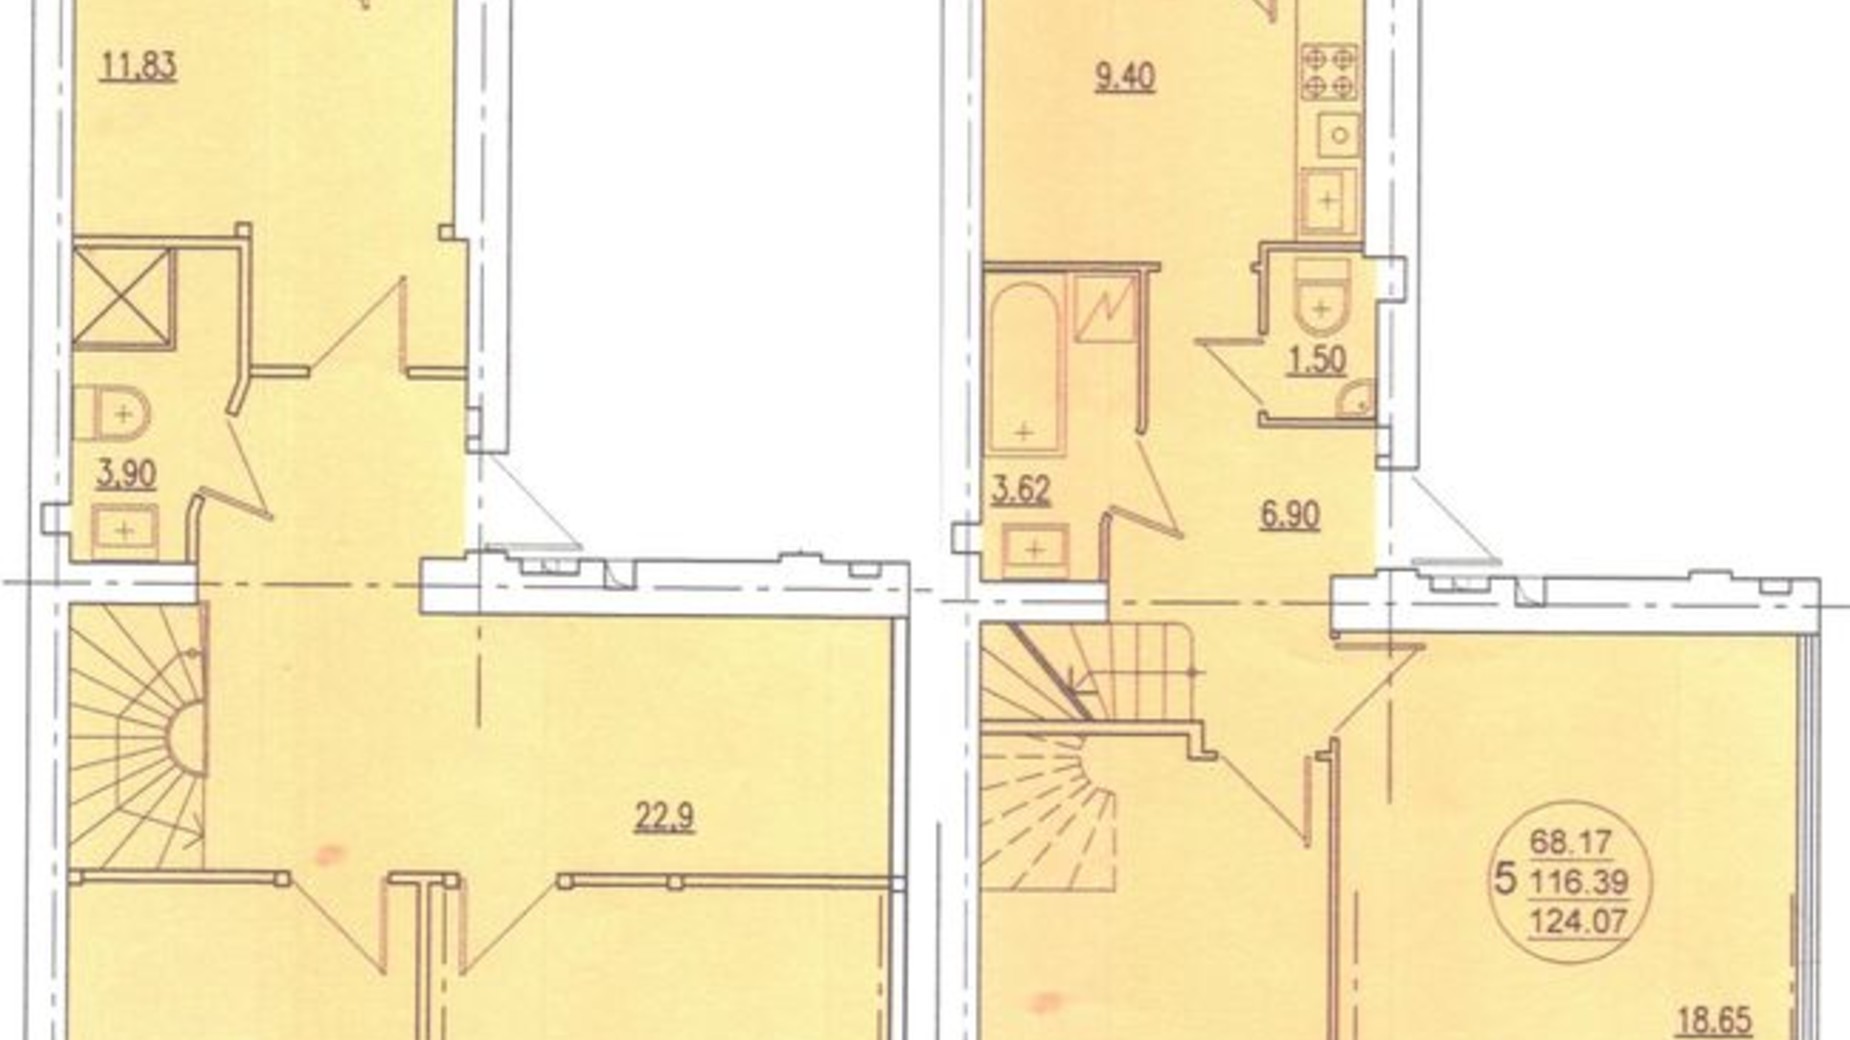 Планировка много­уровневой квартиры в ЖК ул. Самборская, 128/1 124.07 м², фото 426187